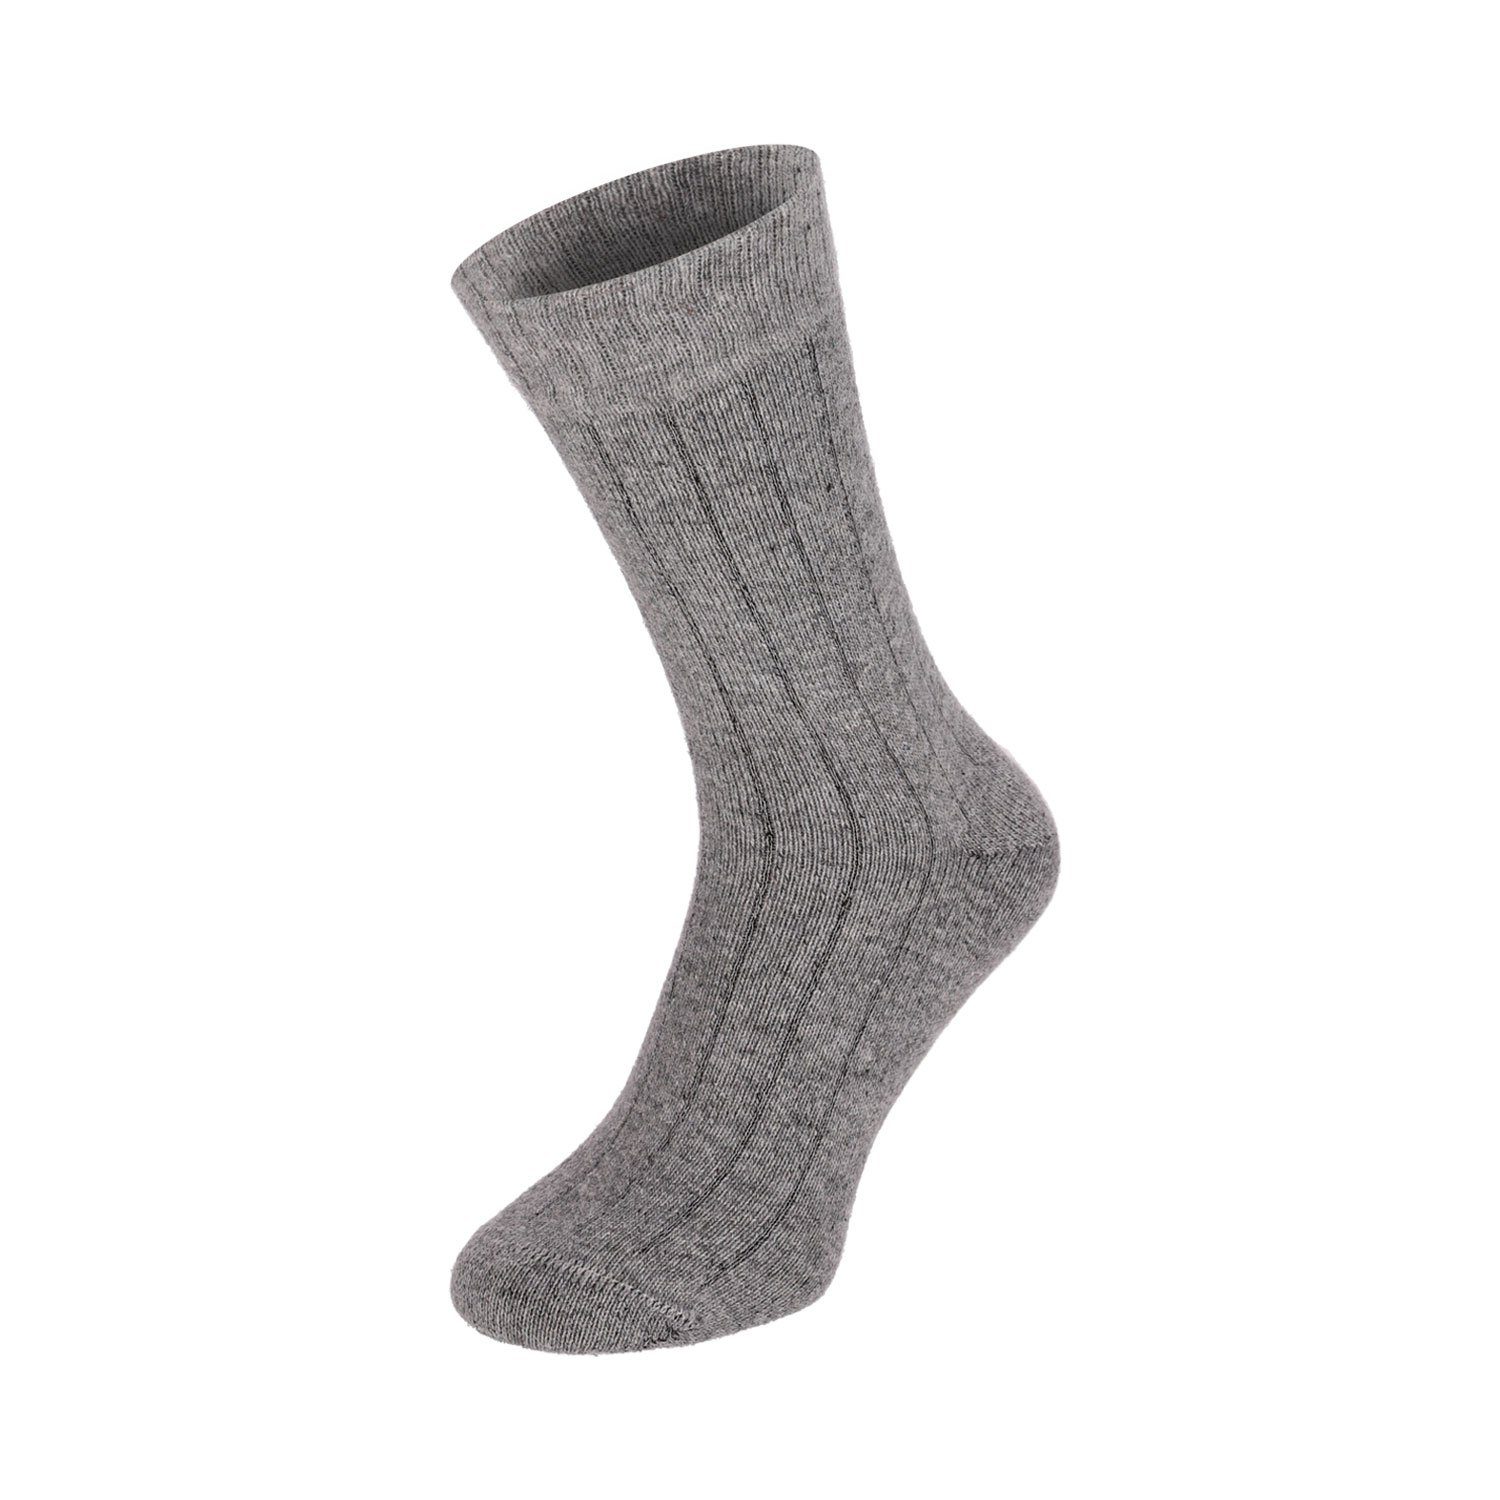 Herren Winter 2 Soft Extra Strümpfe Warm Paar Merino Wolle Chili Damen Super Lifestyle Socken